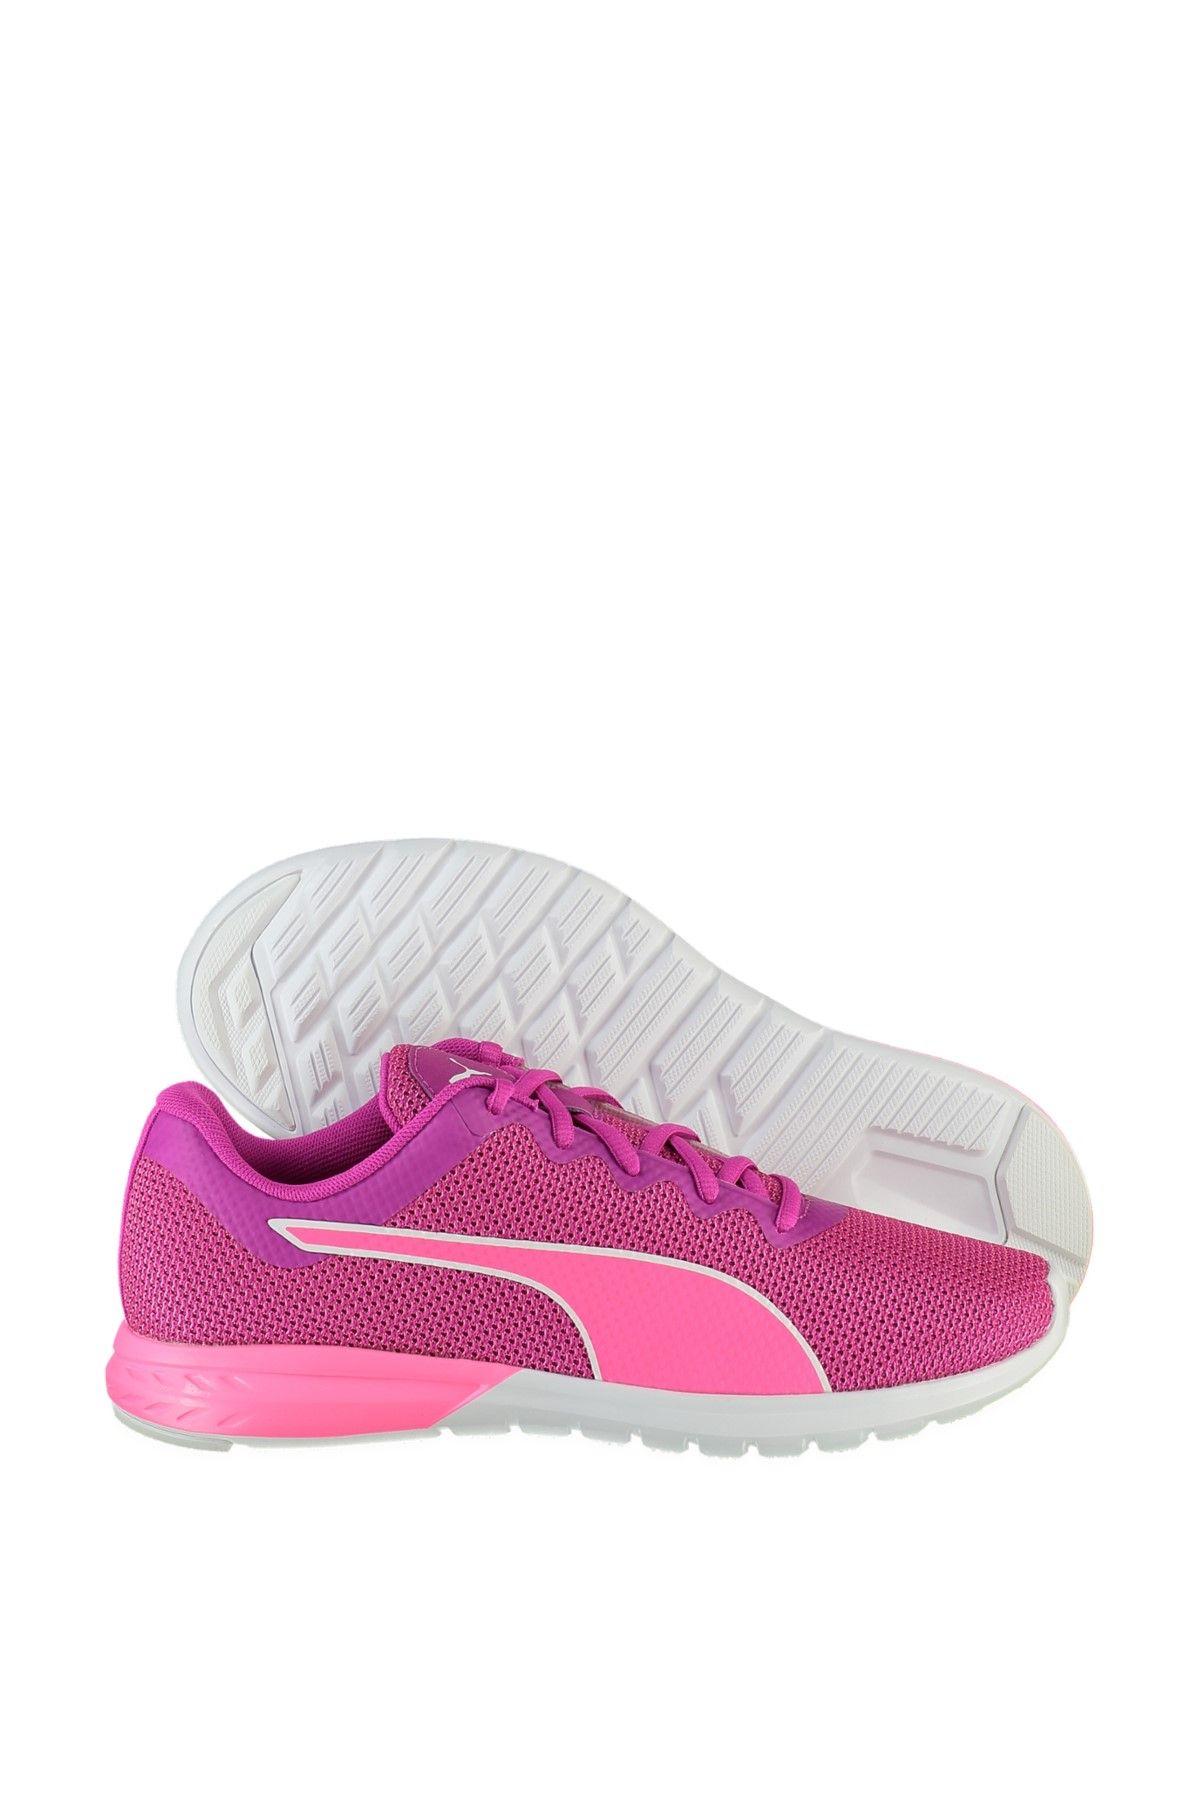 Puma VIGOR Pembe Kadın Koşu Ayakkabısı 100268425